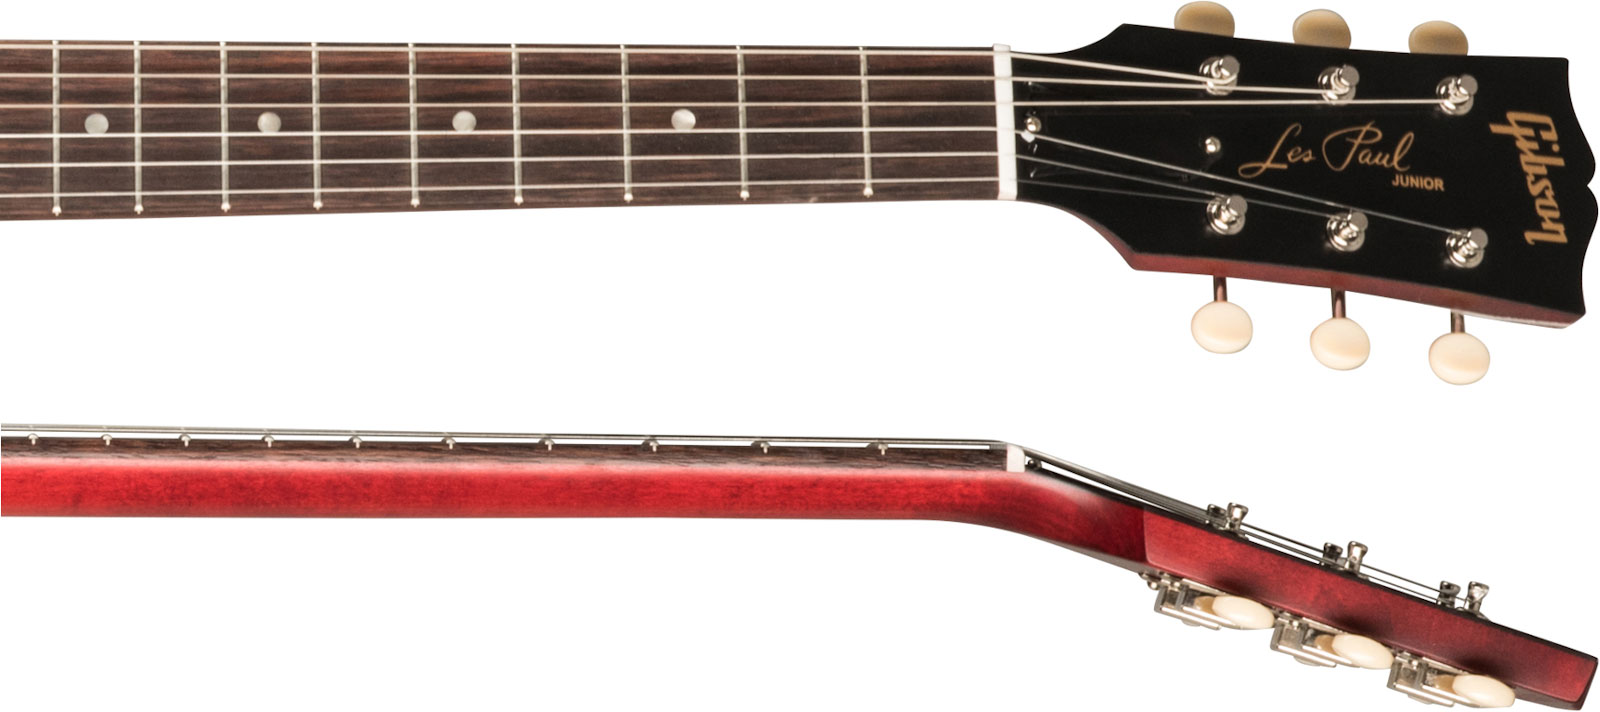 Gibson Les Paul Junior Tribute Dc Modern P90 - Worn Cherry - Guitare Électrique Double Cut - Variation 3